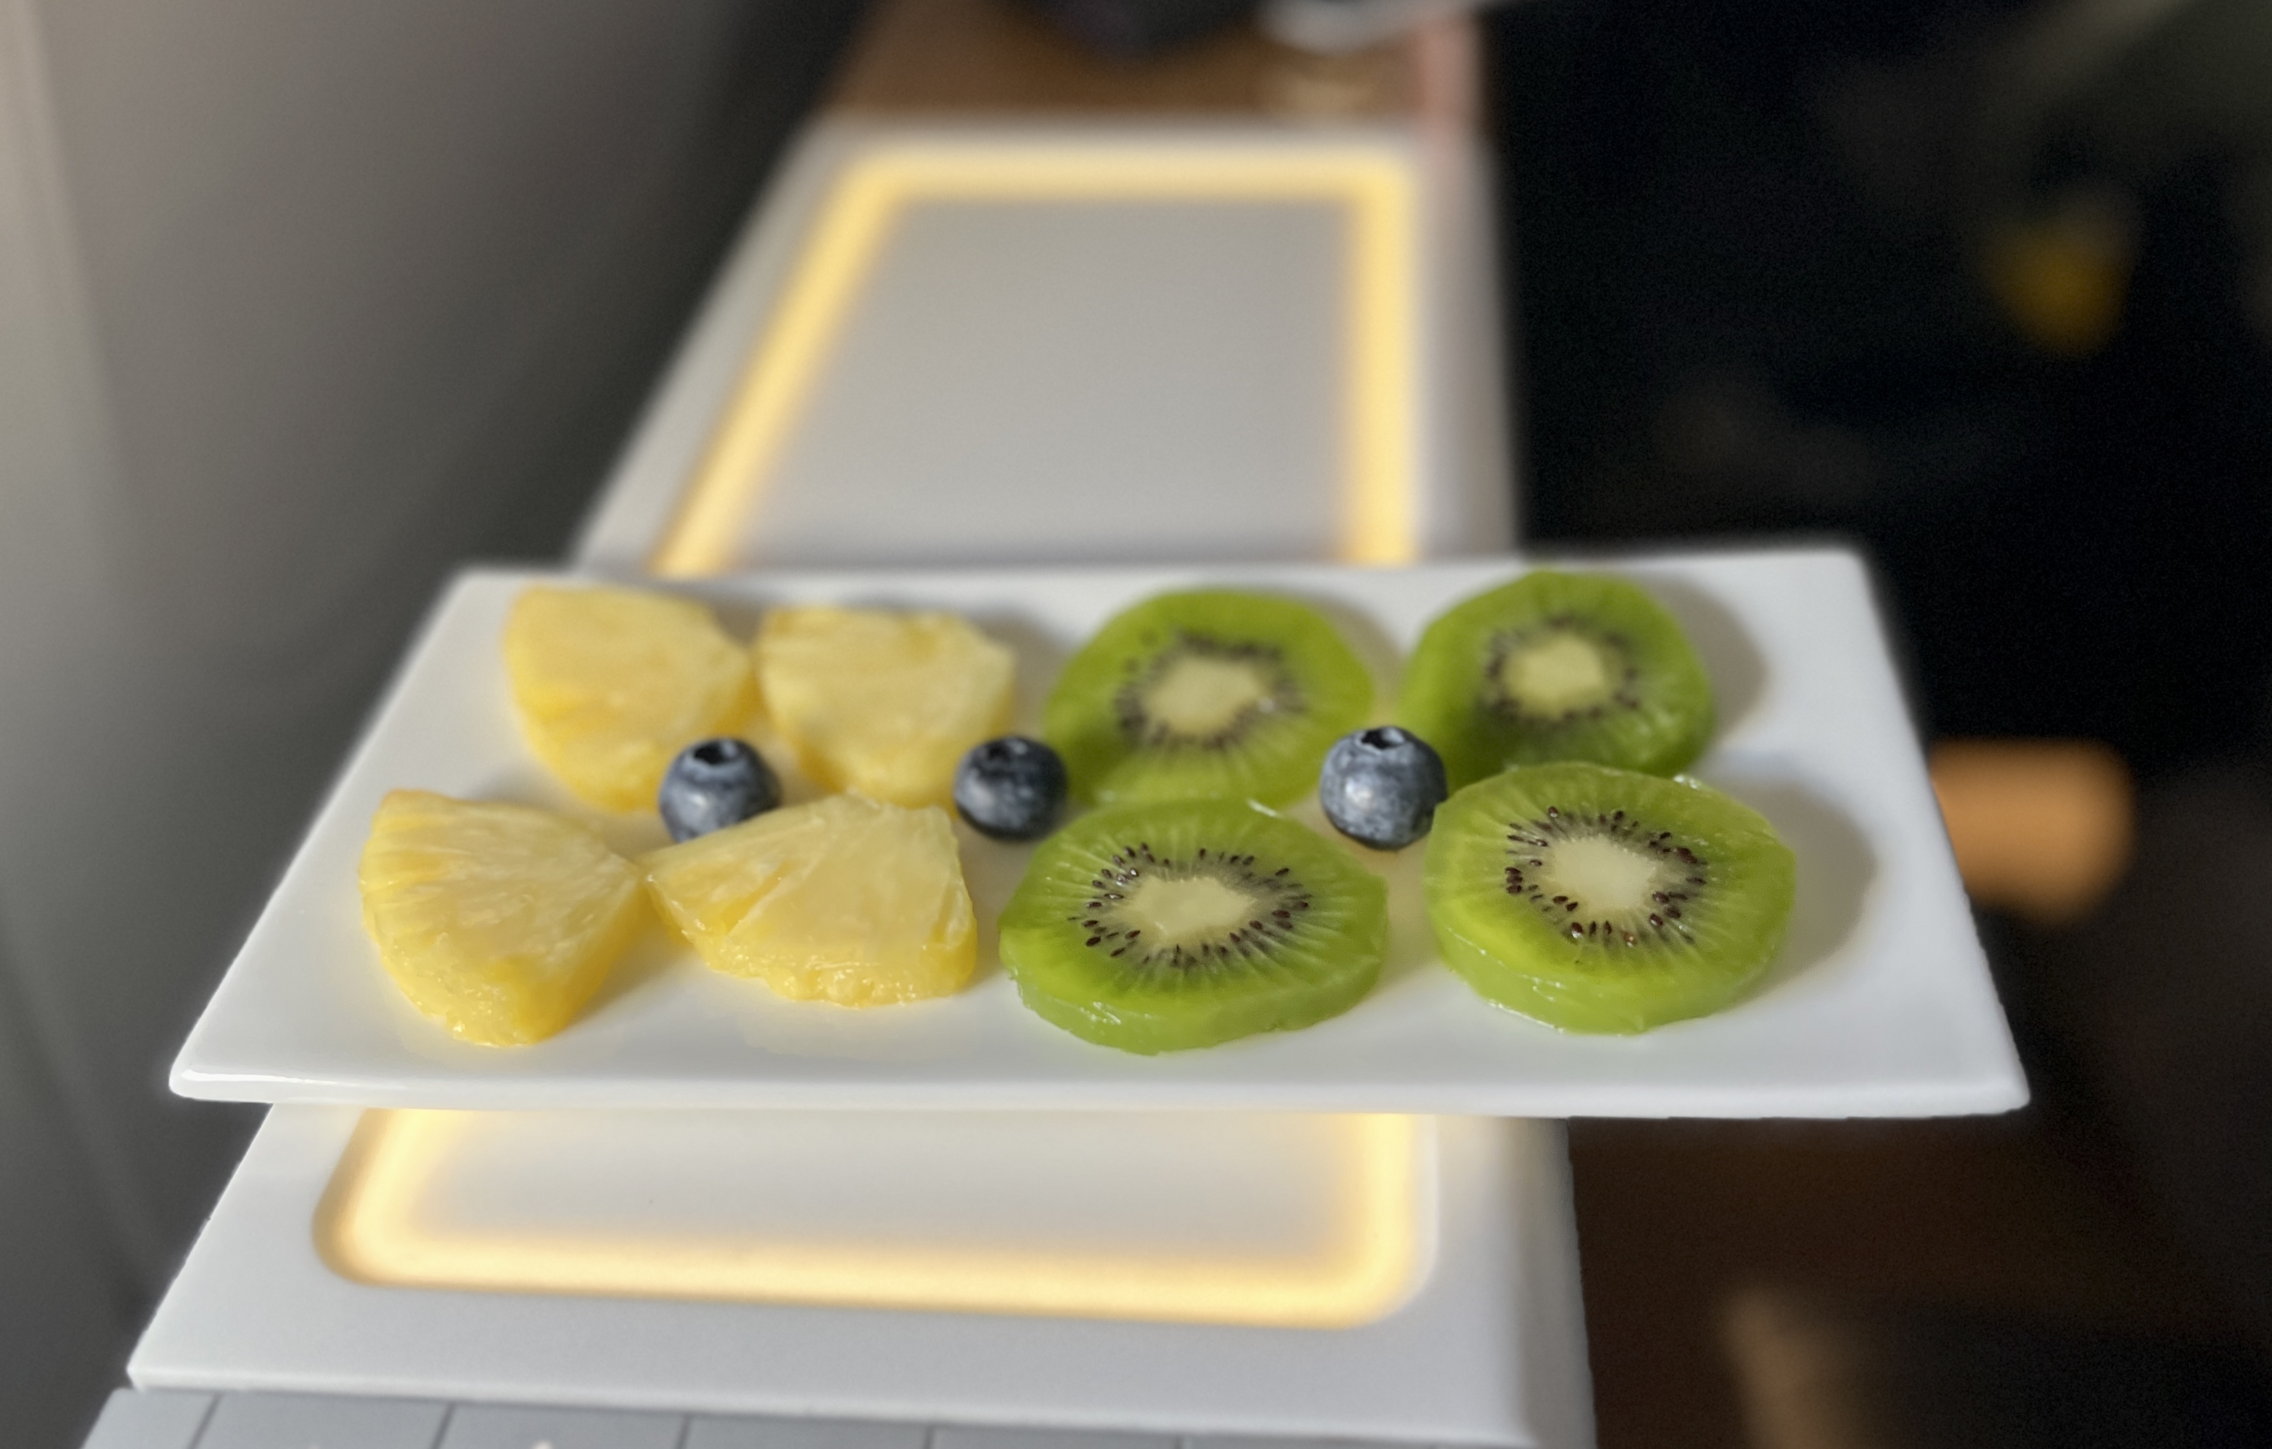 Dessertteller mit Ananas-Stückchen und Kiwi-Scheibchen, garniert mit drei Blueberries